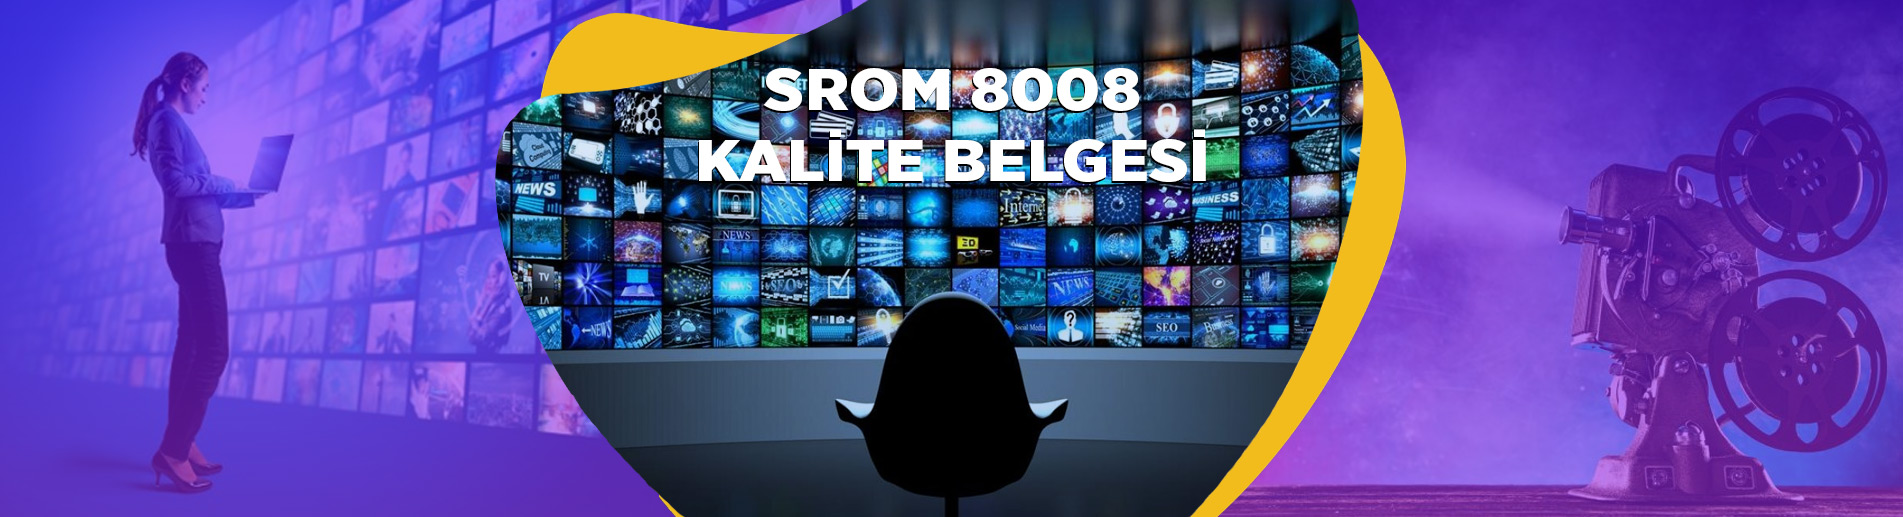 SROM 8008 SERTİFİKA Medya